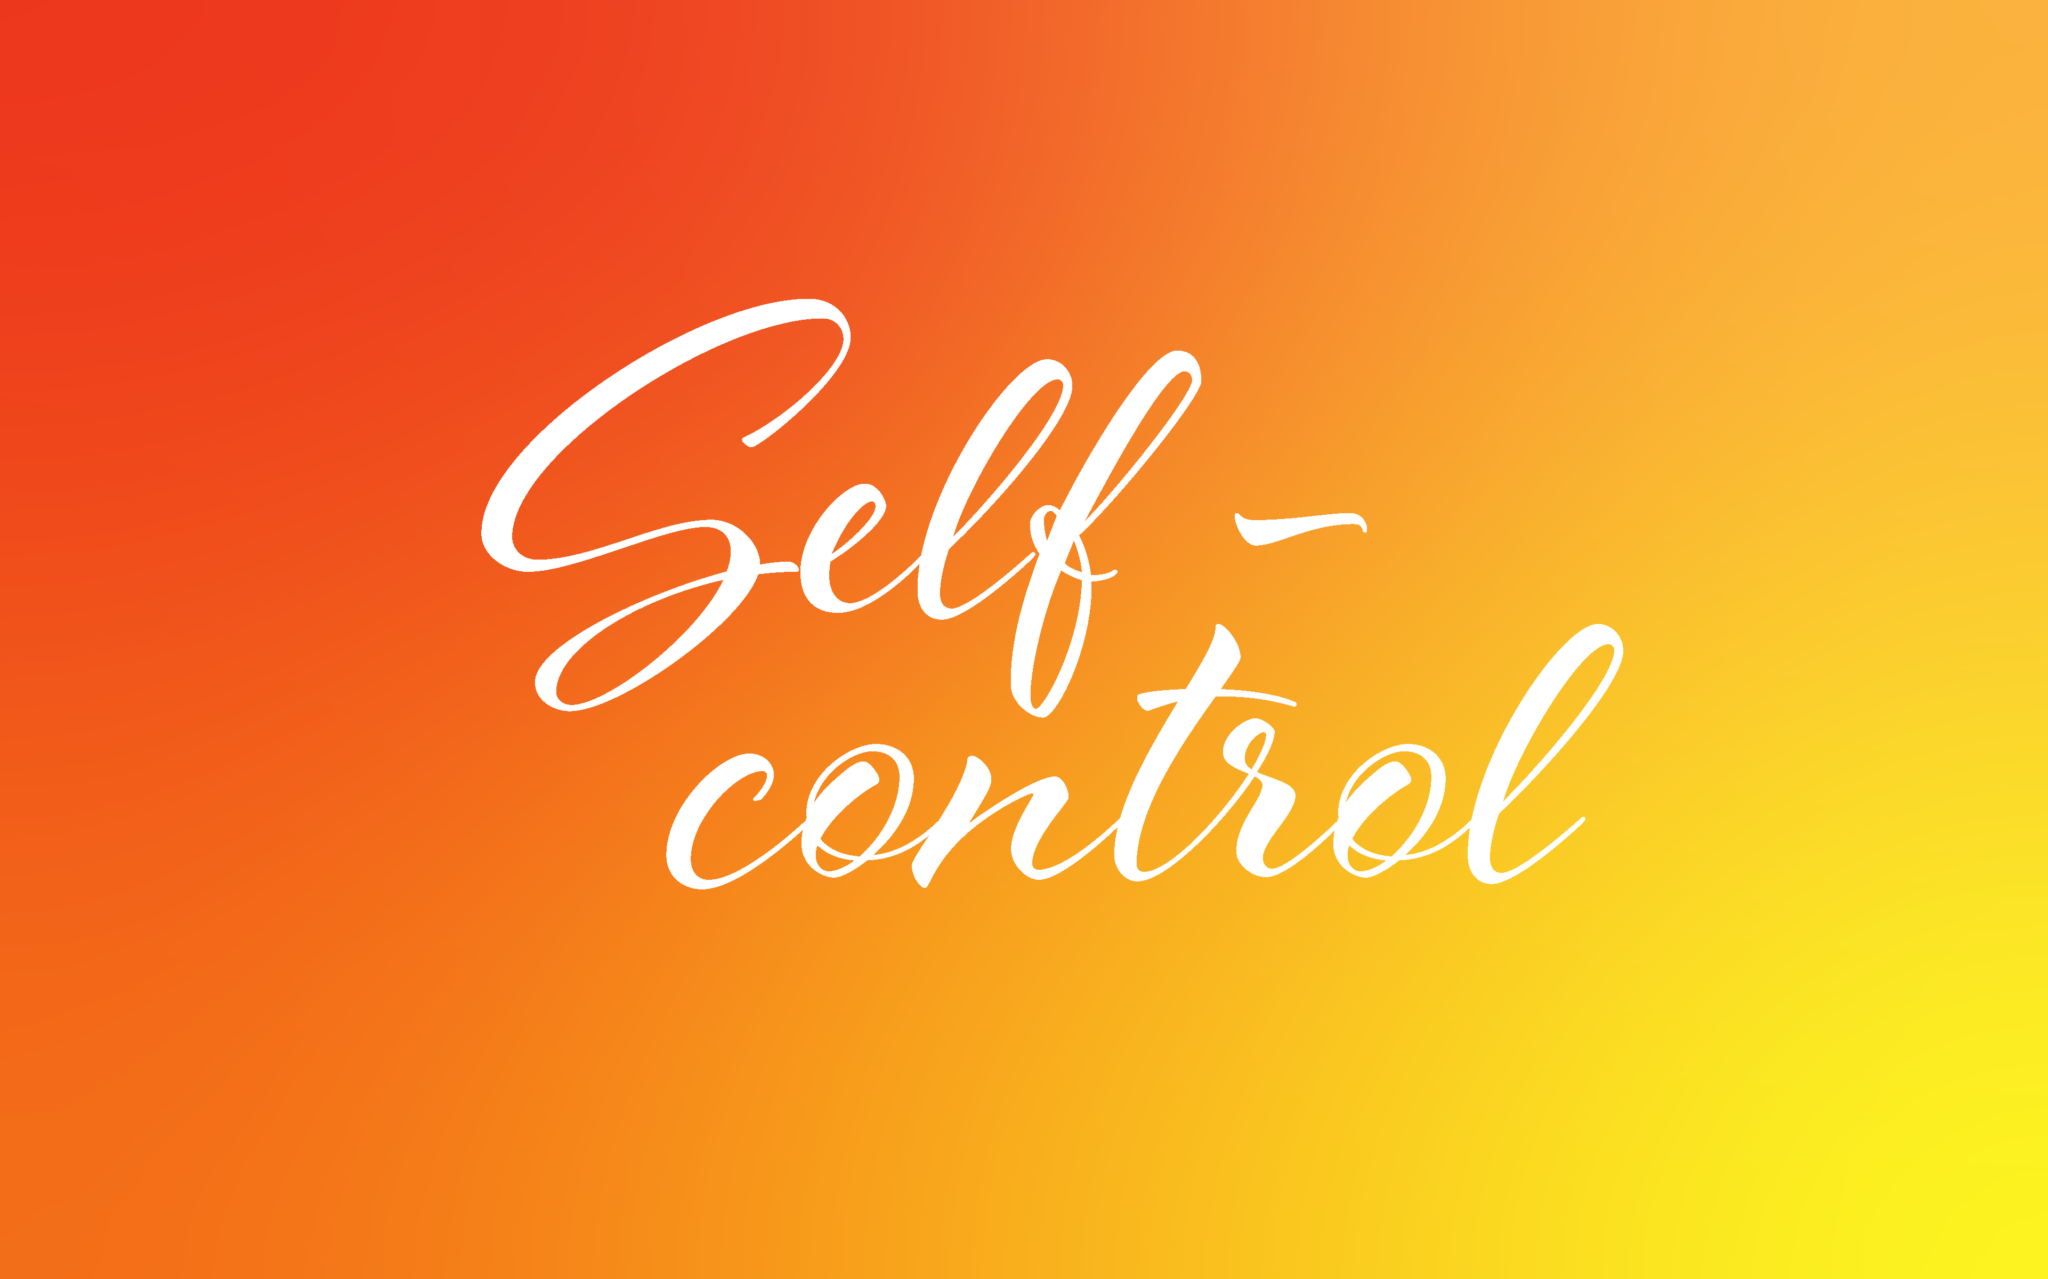 self control word